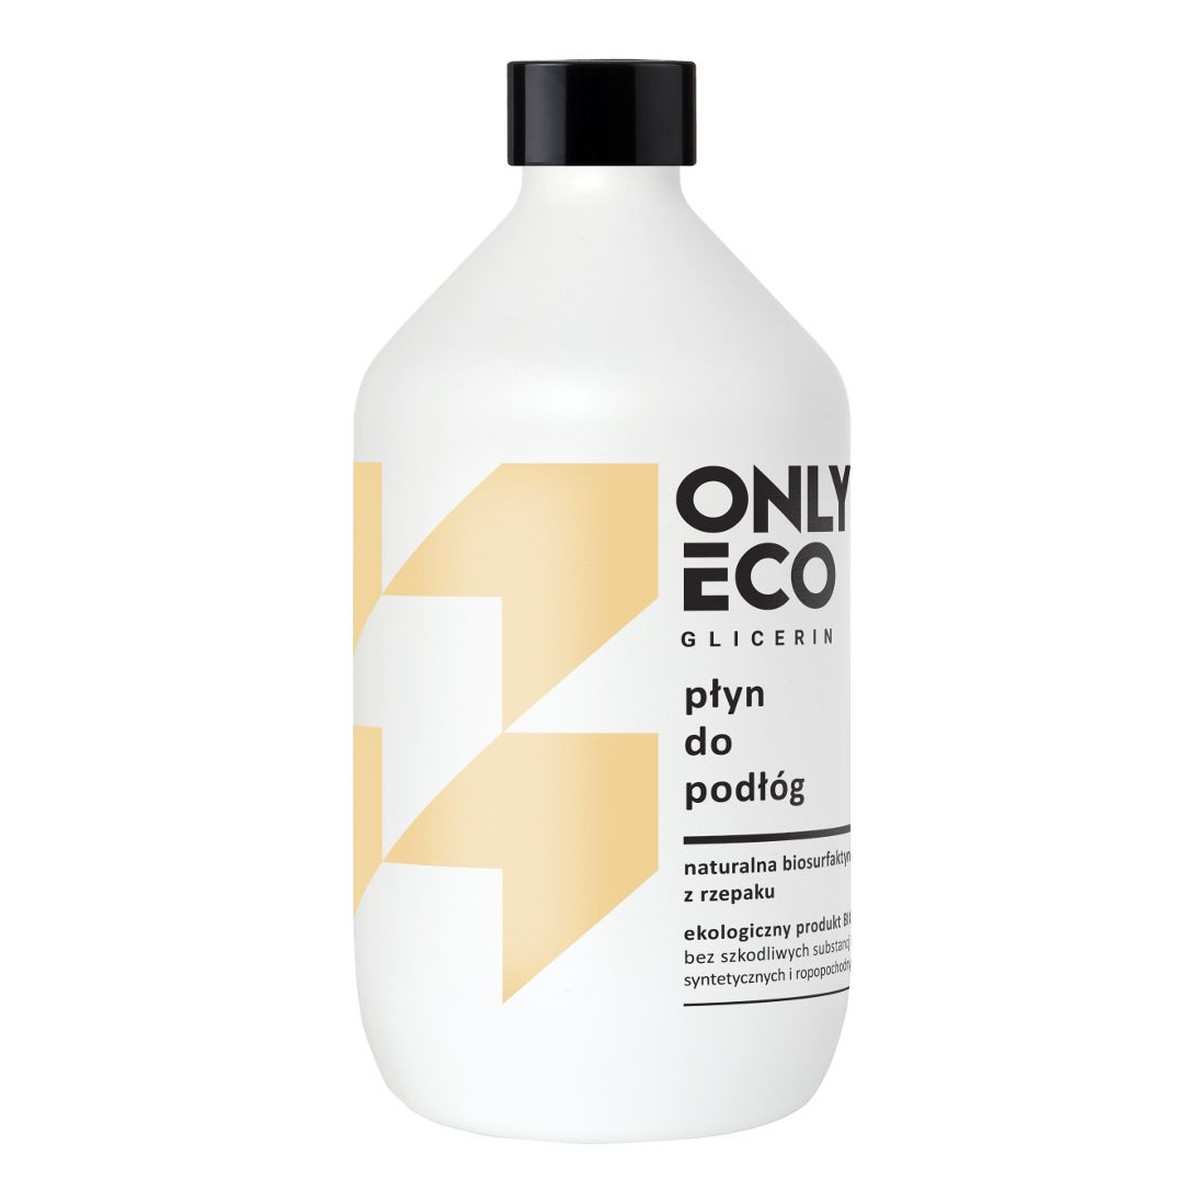 OnlyEco Glicerin ekologiczny płyn do podłóg 500ml